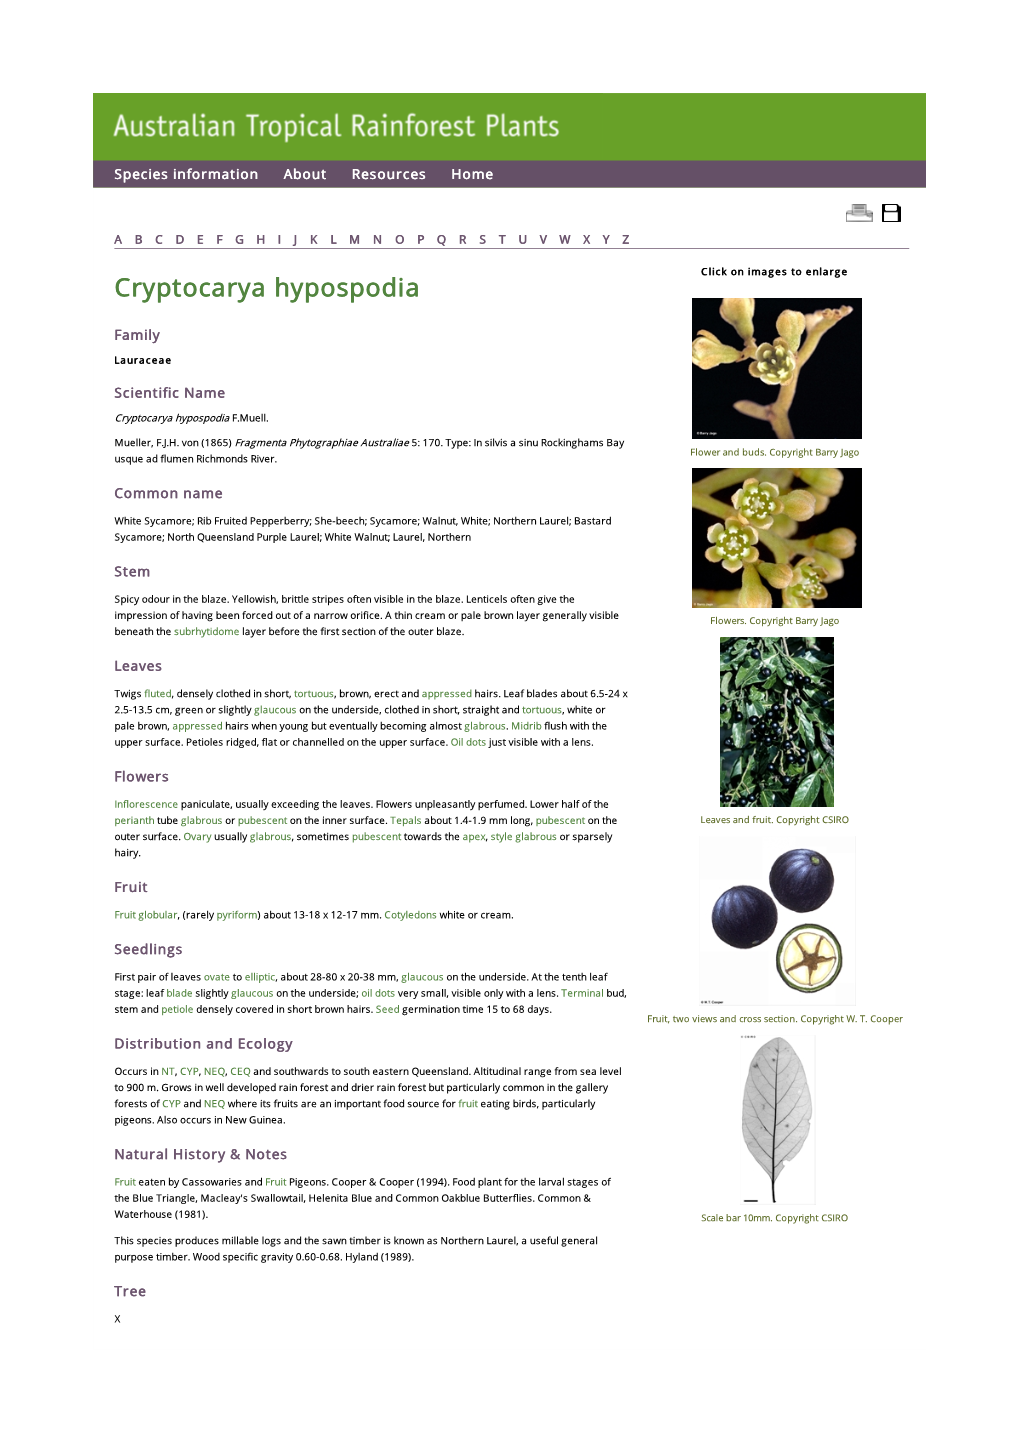 Cryptocarya Hypospodia Click on Images to Enlarge